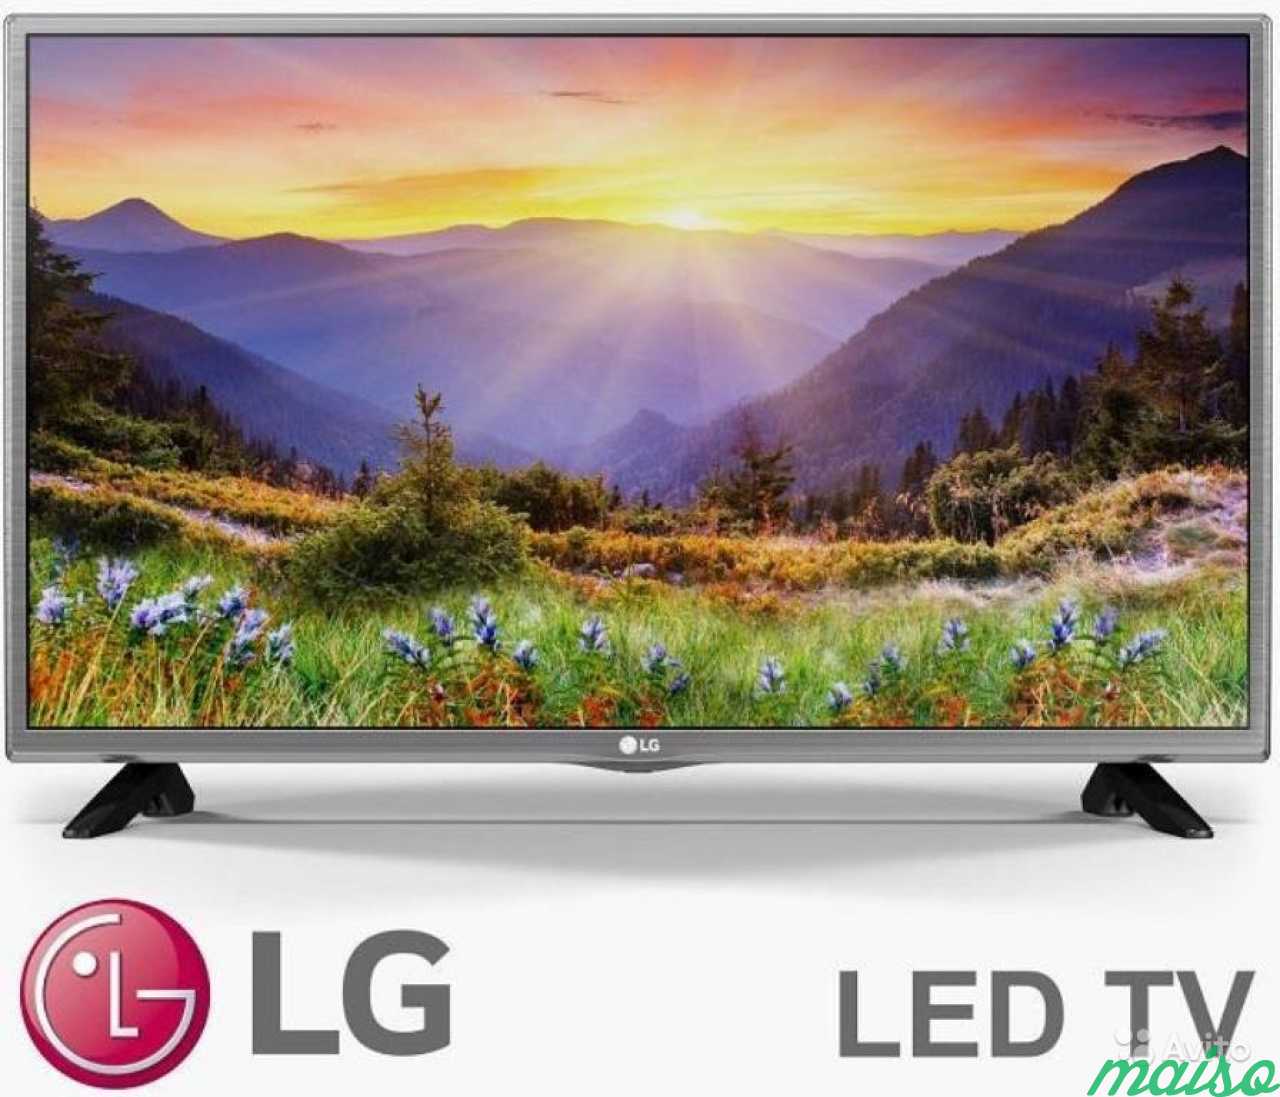 Телевизор lg l. LG 32lh519u. 32" Телевизор LG 32lh513u led. Телевизор LG 32 Full LG led Smart TV. LG 32lf510u.